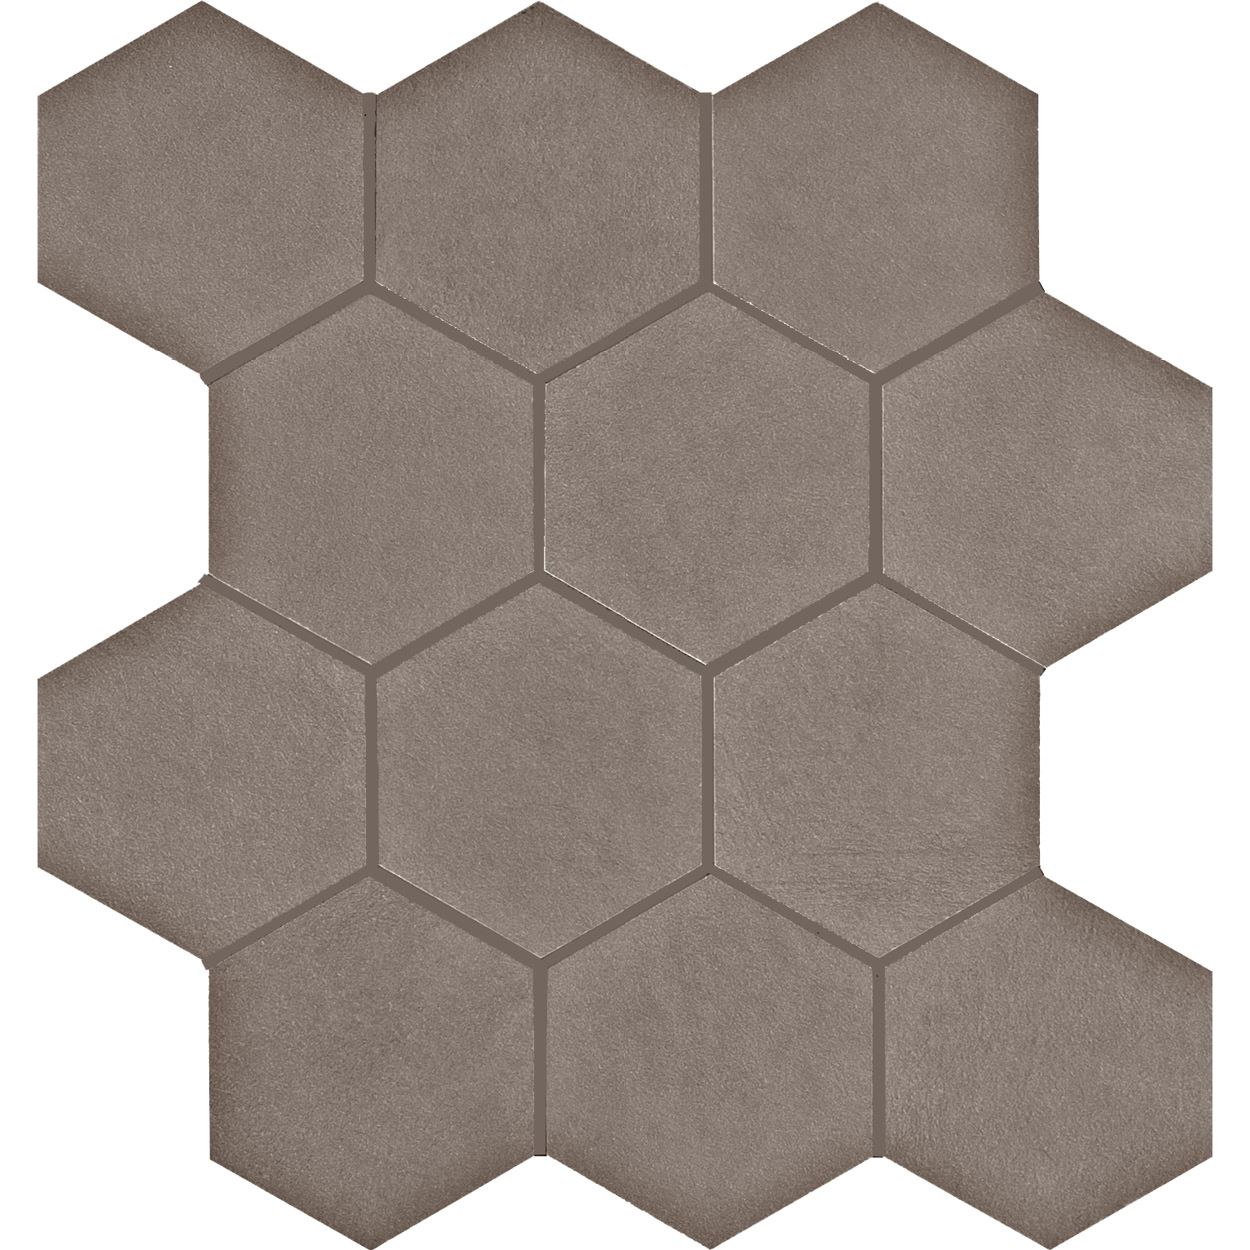 3 X 3 Seamless WR_03 hexagon